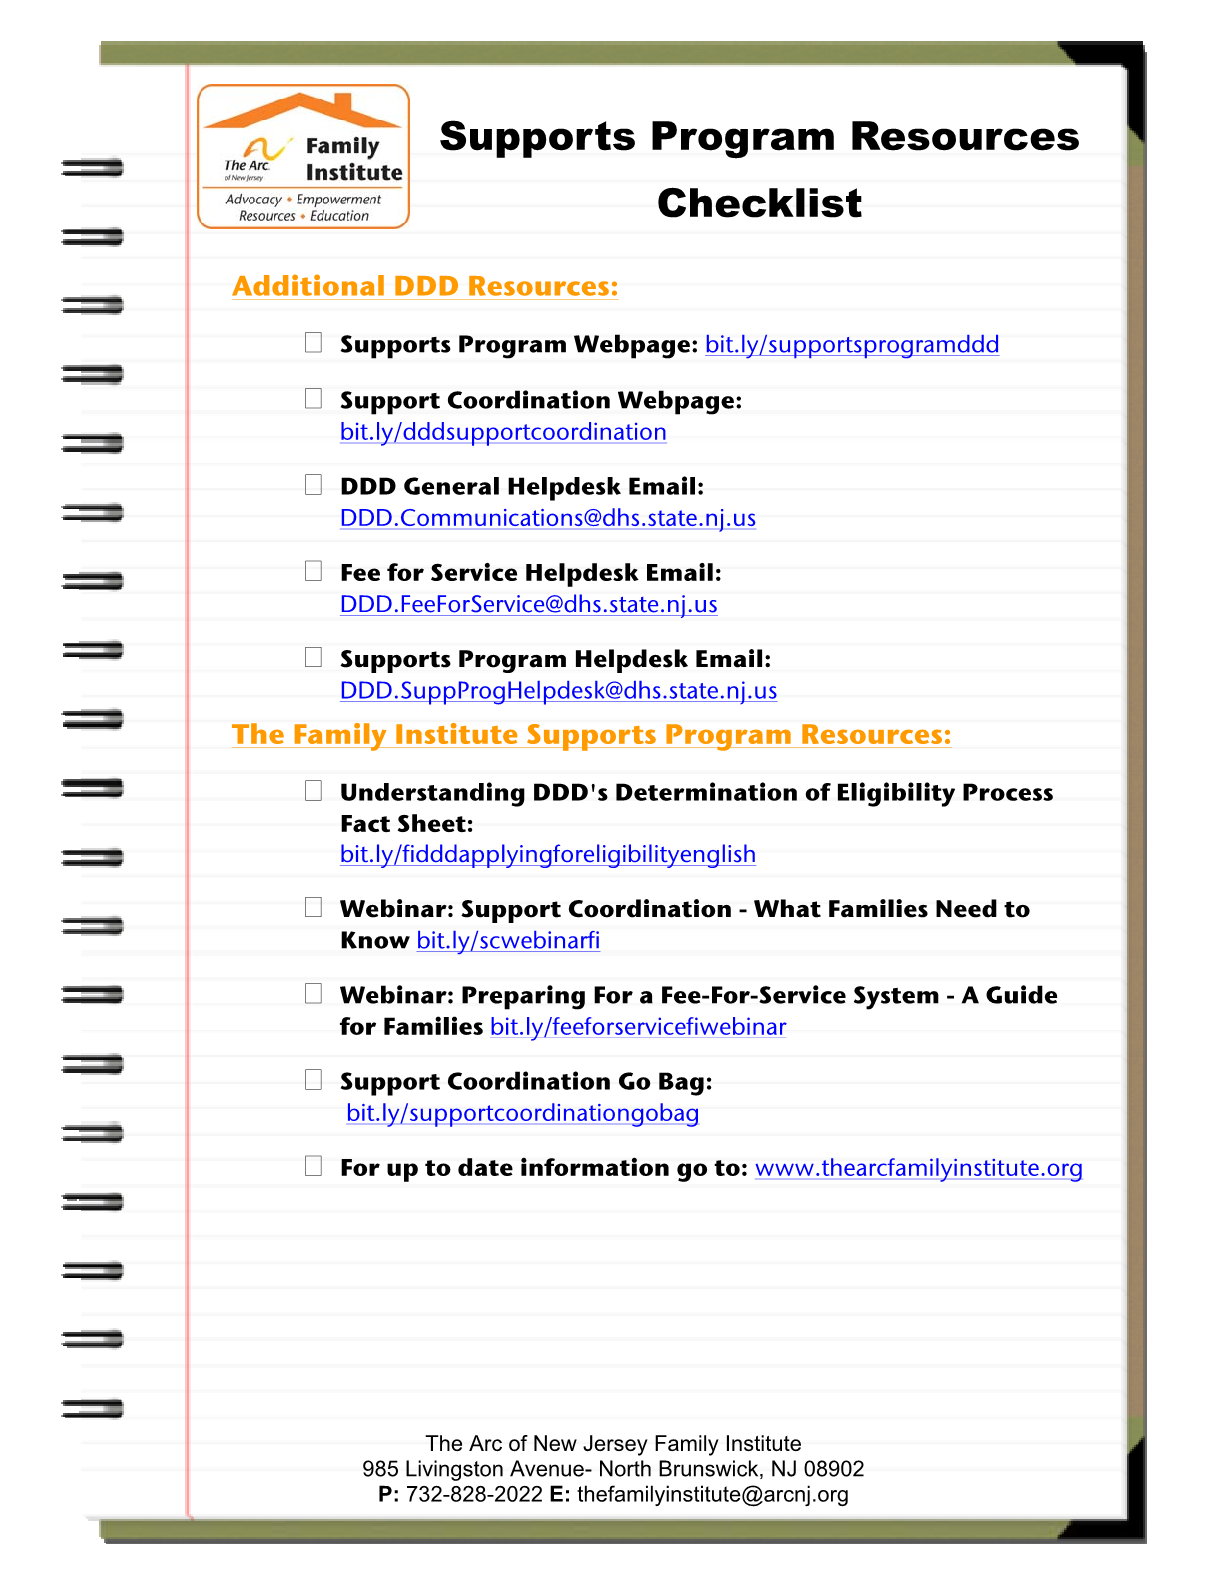 Supports Program Resources Checklist